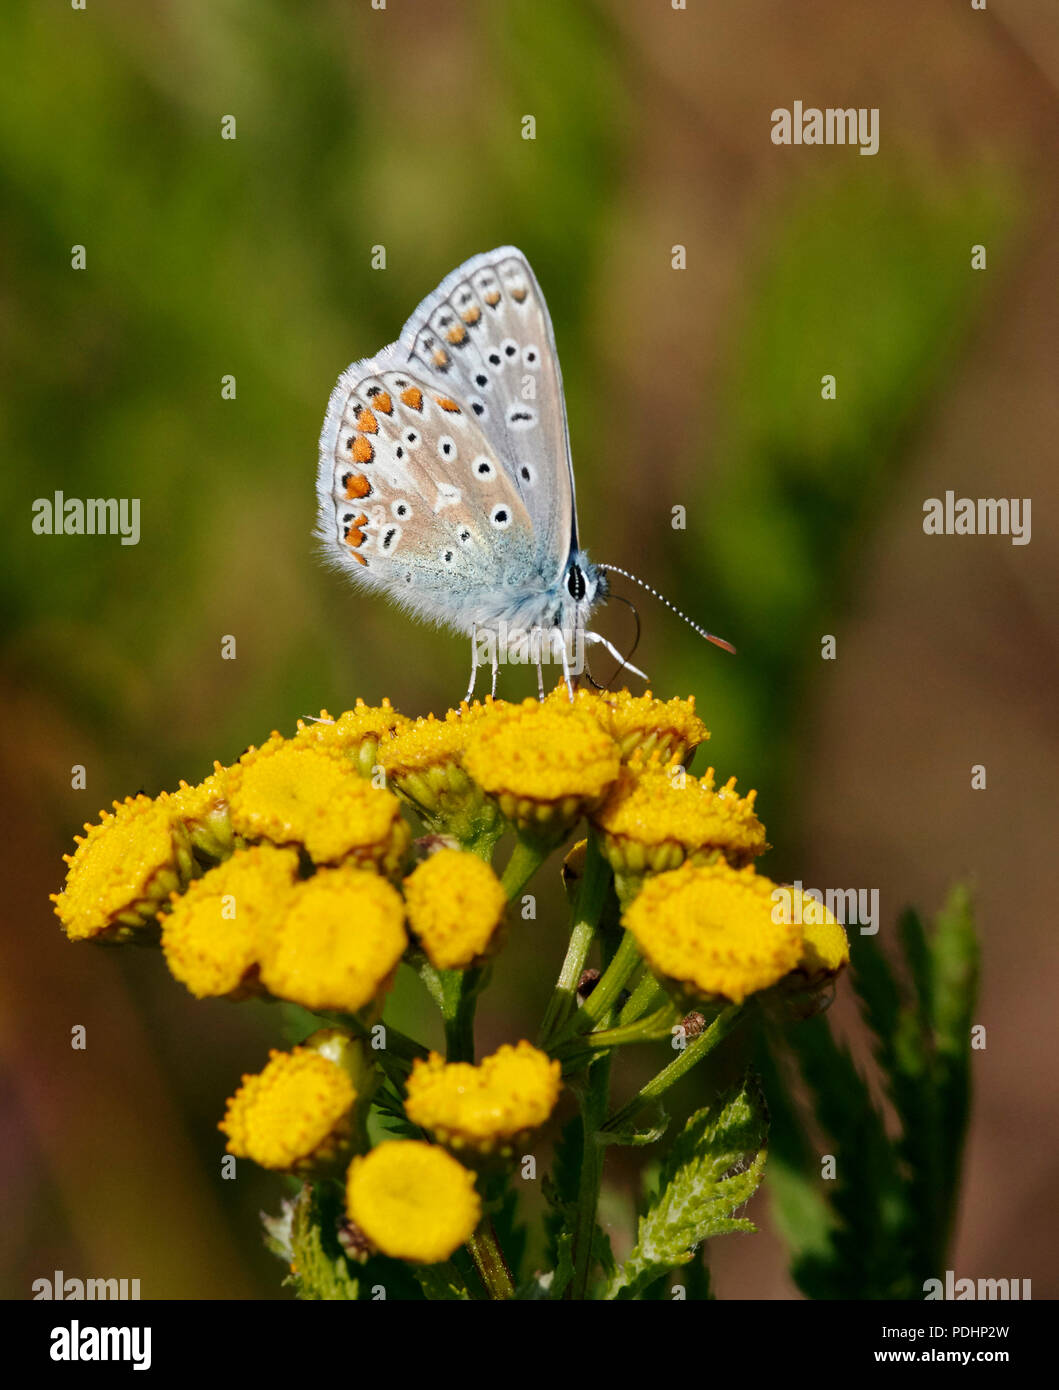 Mâle bleu commun sur le nectar. Hurst Meadows, East Molesey, Surrey, Angleterre. Banque D'Images